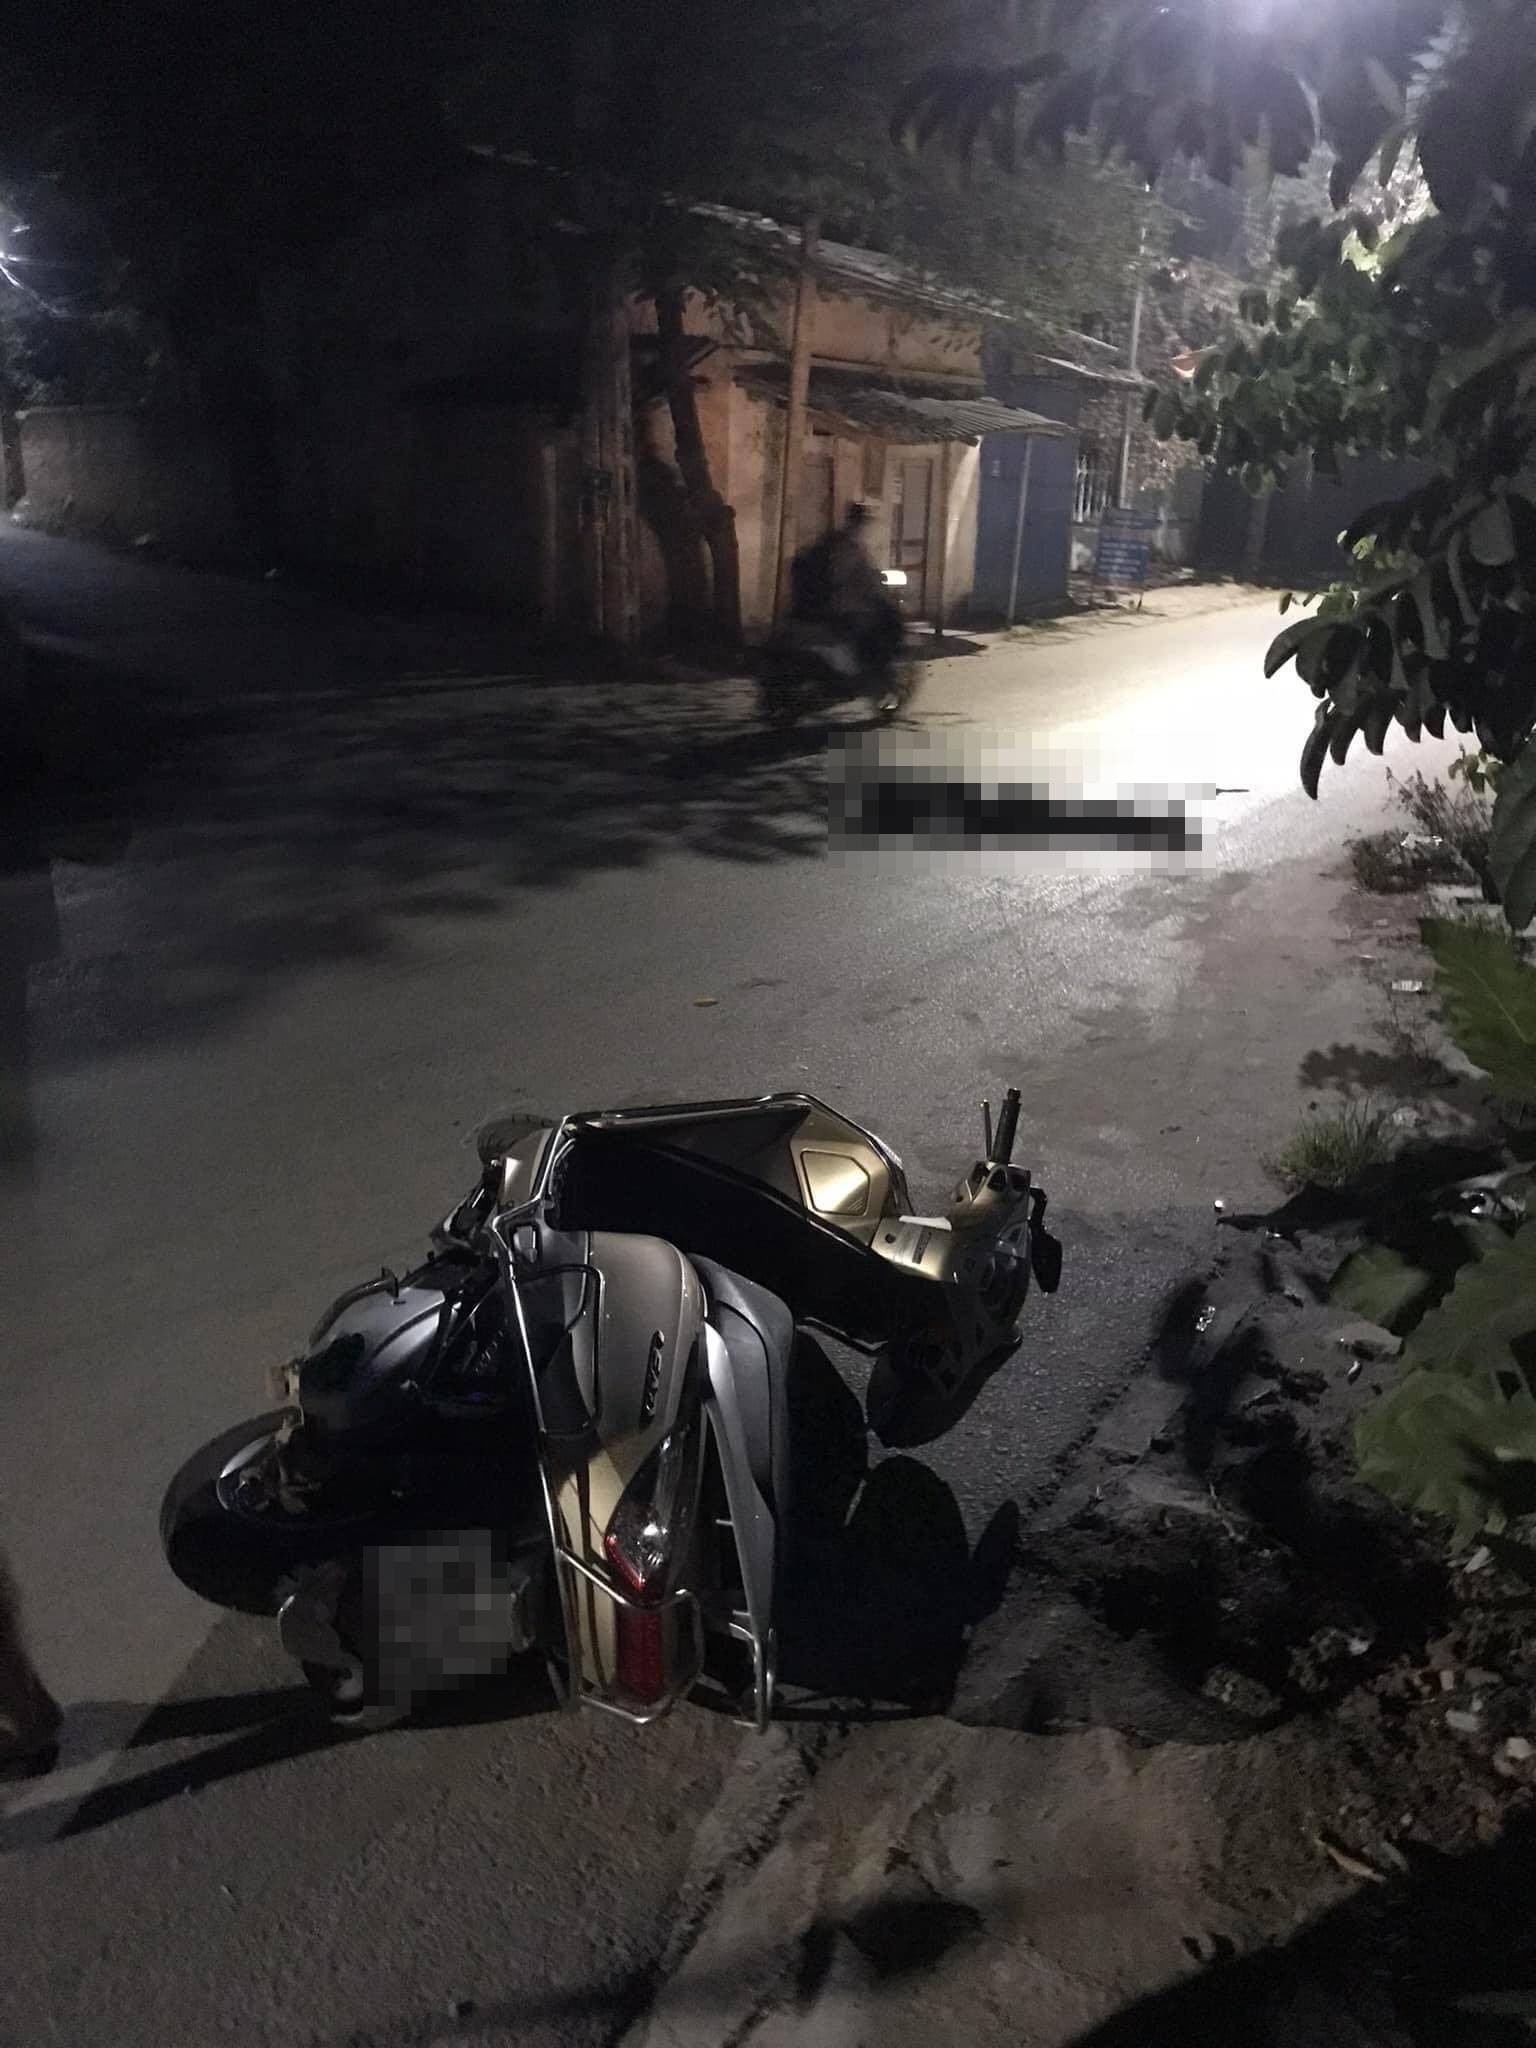 Chồng truy sát, chém vợ tử vong trên đường giữa đêm tại Bắc Giang-2